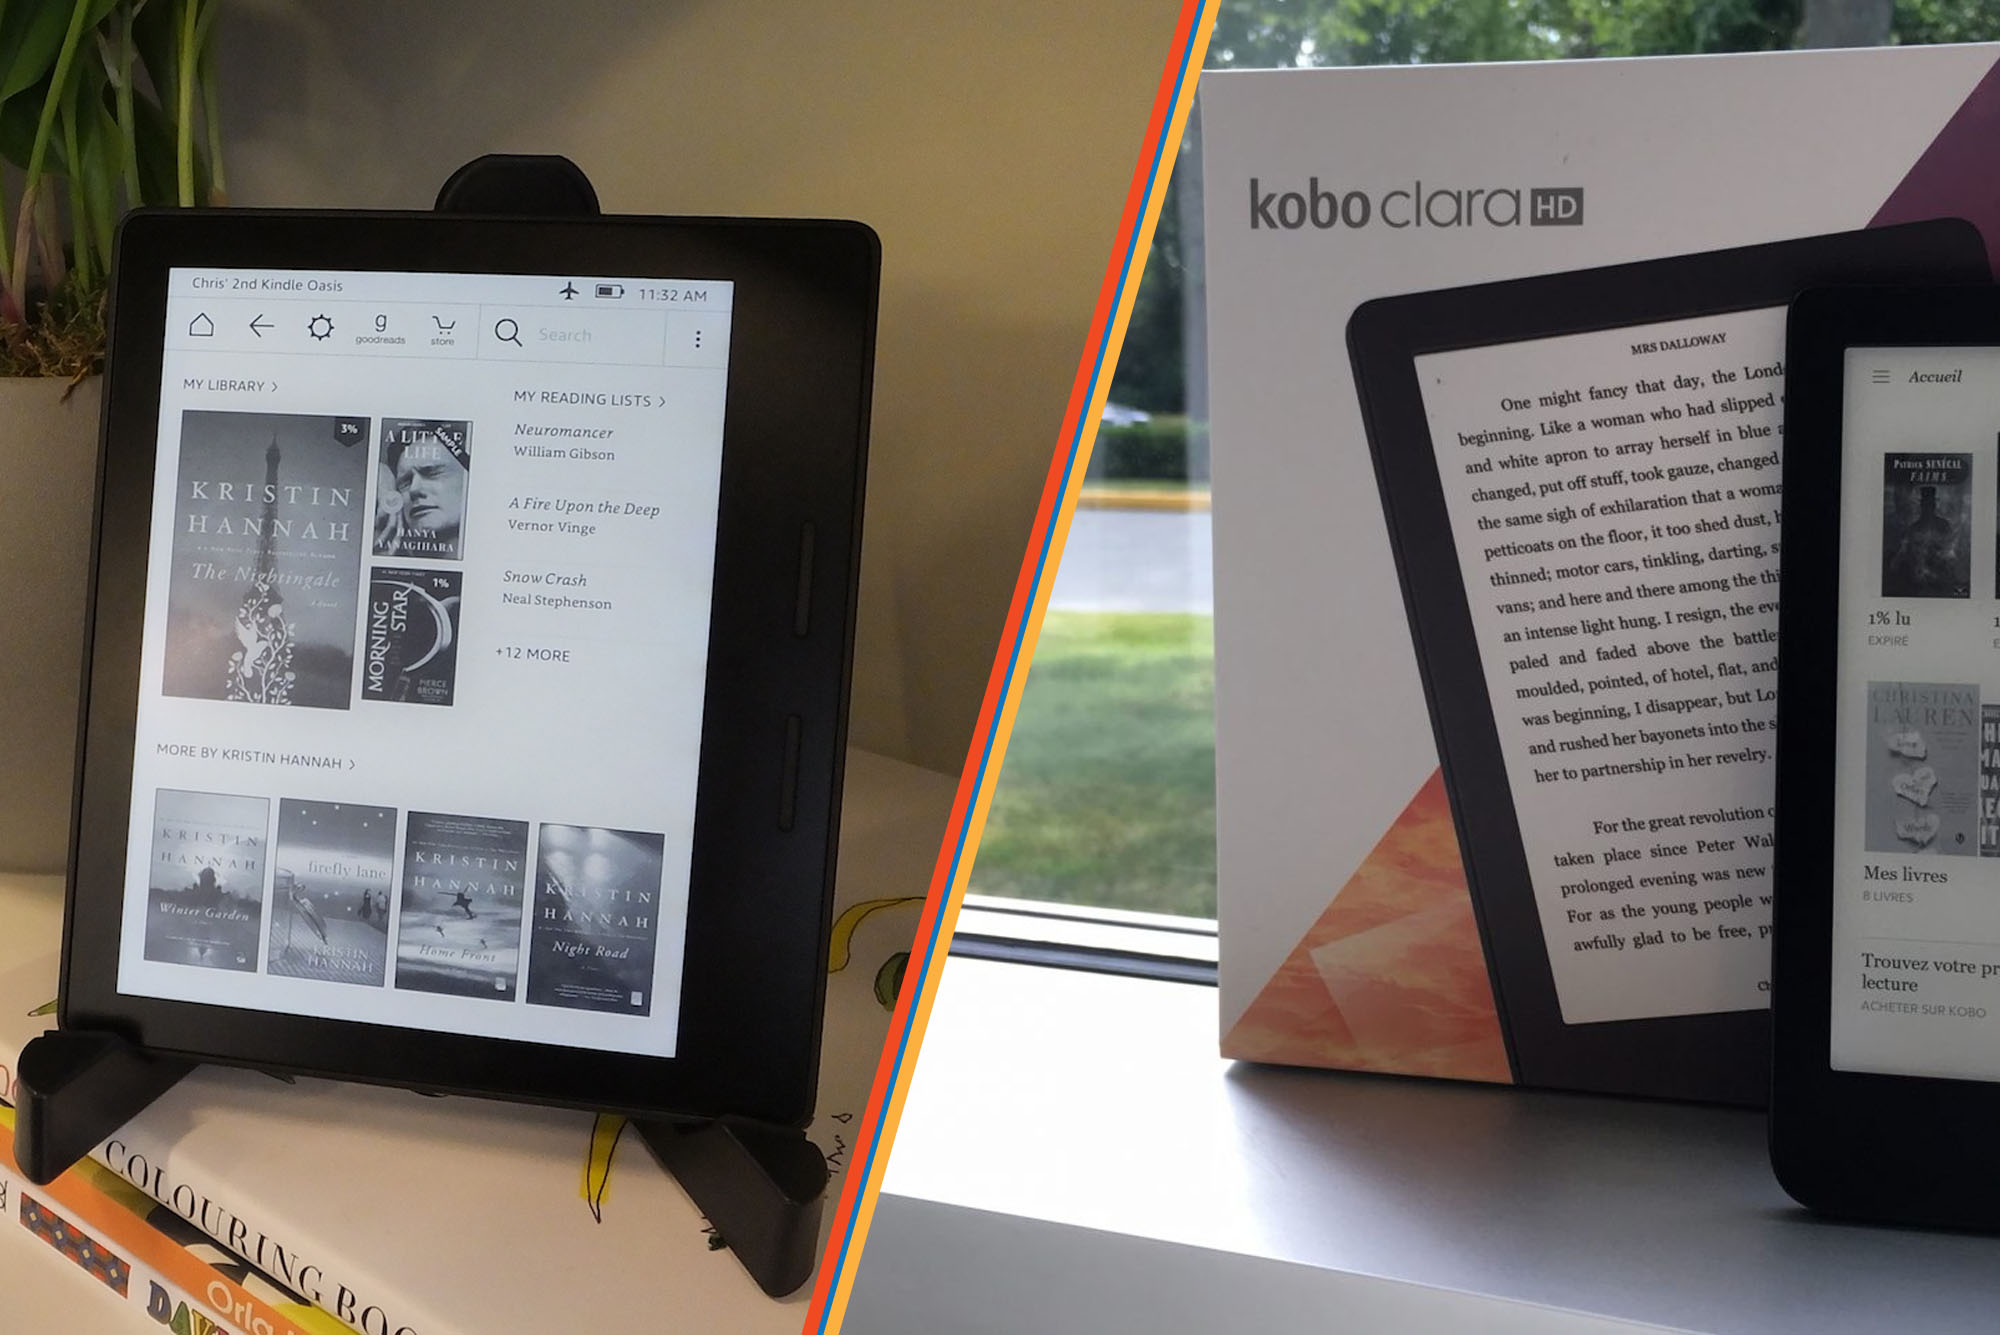 Review: Kobo Aura One is a waterproof “hardcover” ebook reader